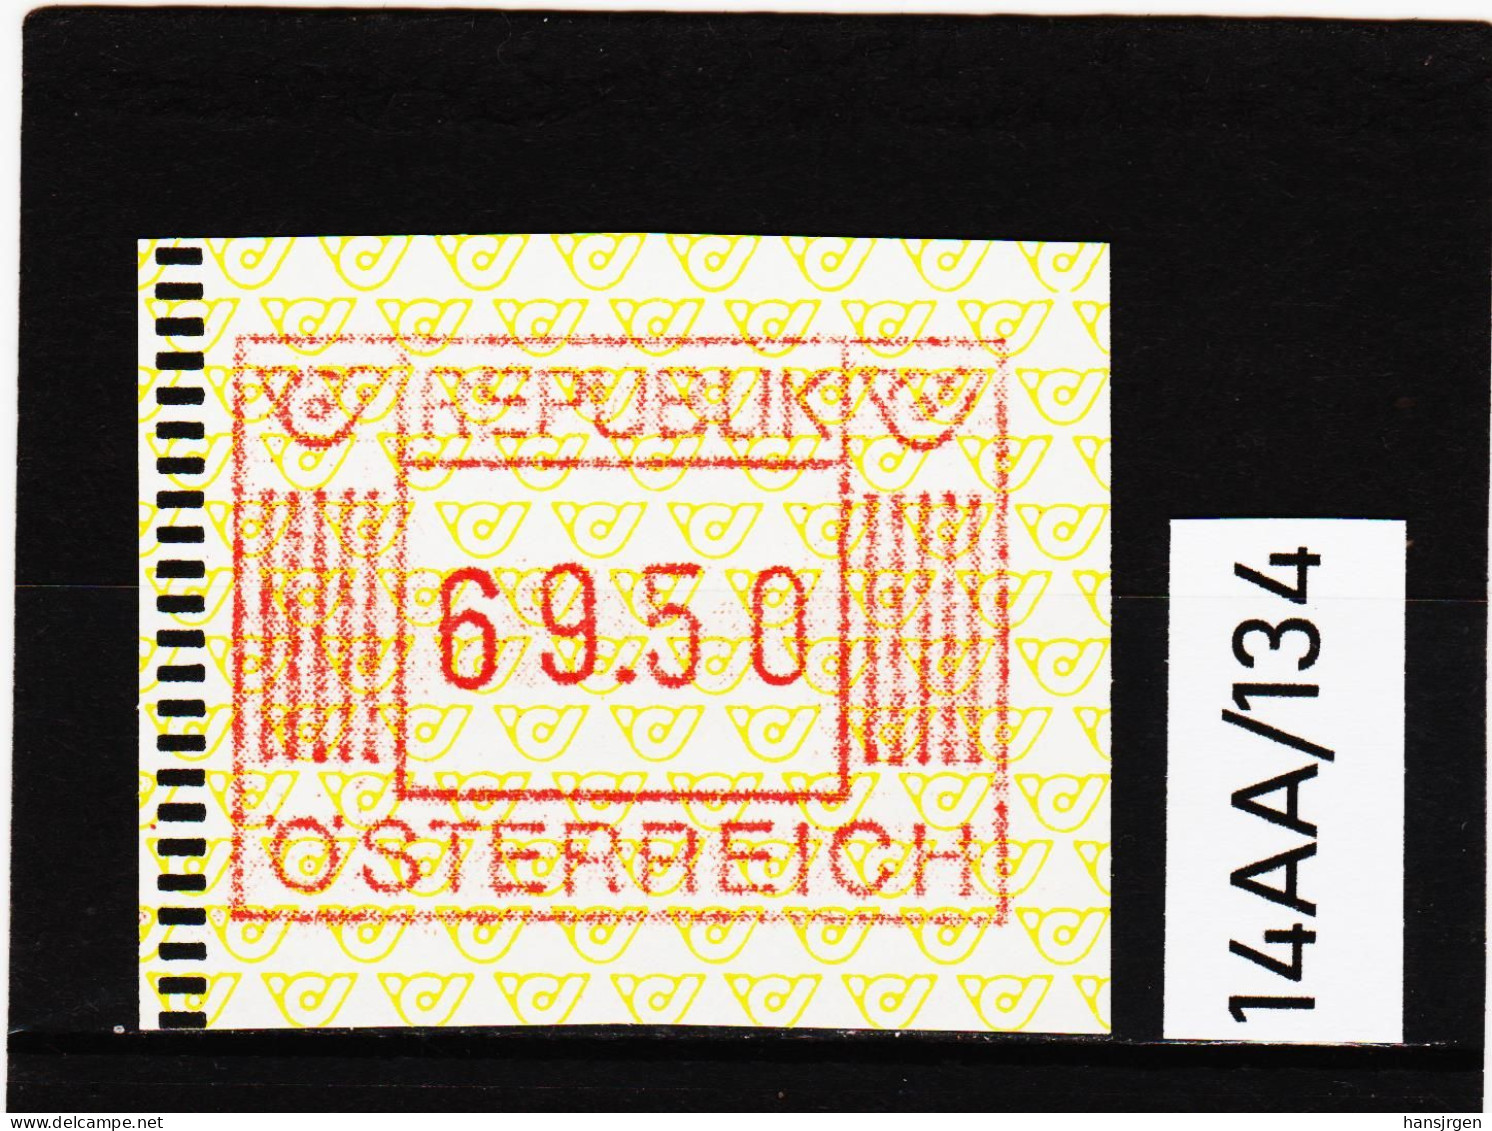 14AA/134  ÖSTERREICH 1983 AUTOMATENMARKEN  A N K  1. AUSGABE  69,50 SCHILLING   ** Postfrisch - Machine Labels [ATM]